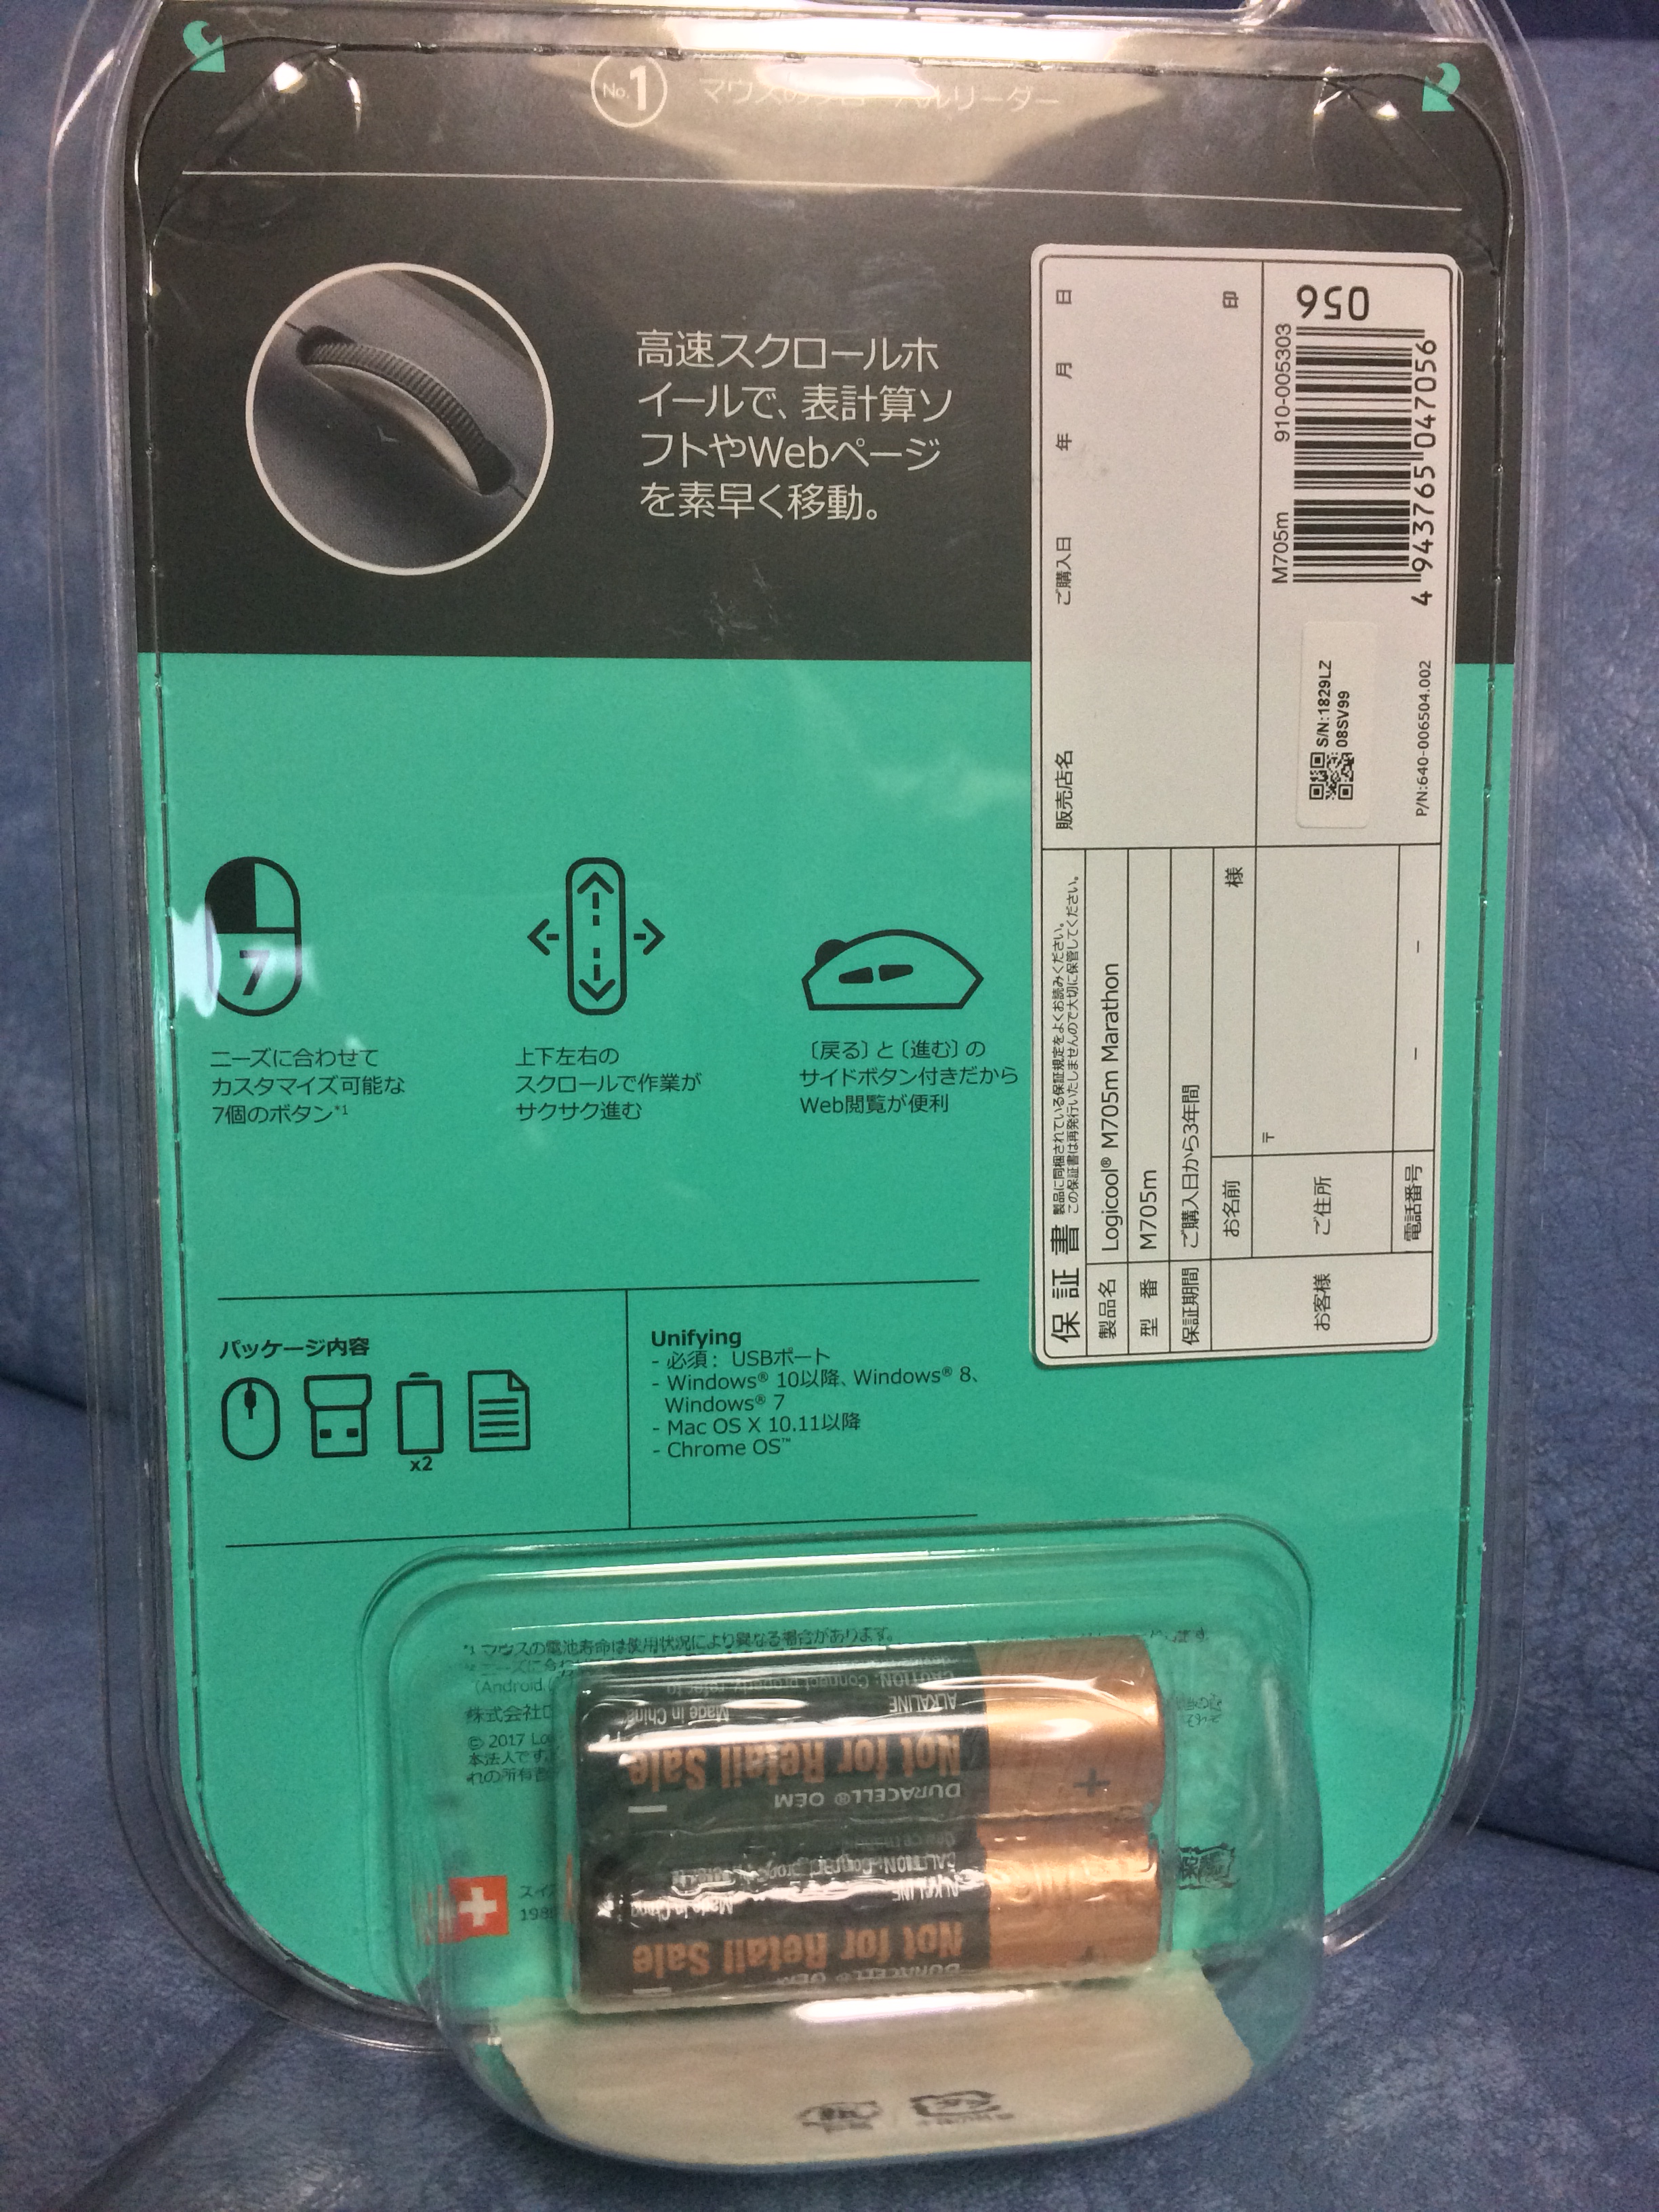 ロジクール(Logicool)のM705 Marathon Mouse)のパッケージ付属されている電池